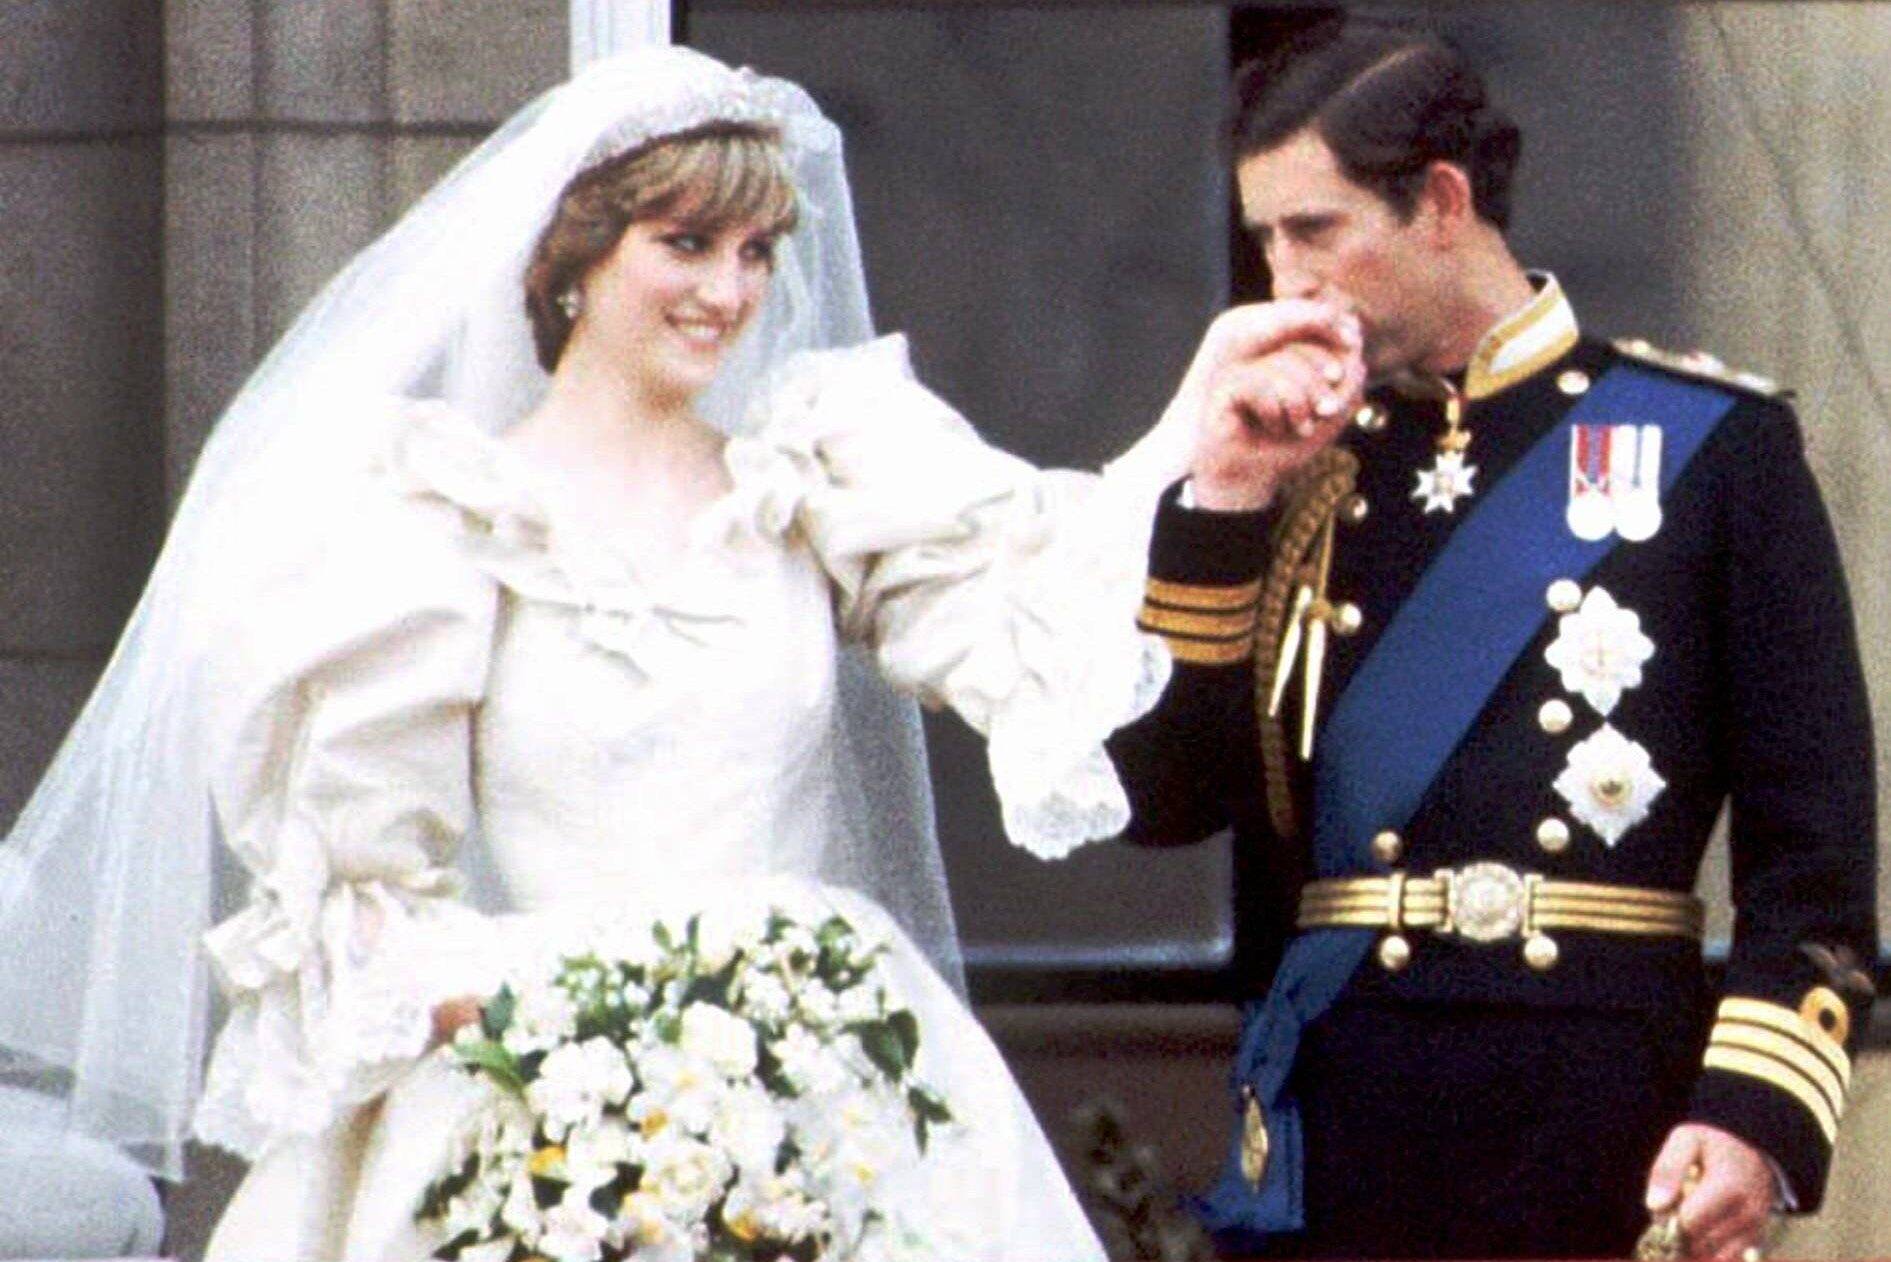 Sinais que precederam o divórcio de Charles e Diana e que estão se repetindo com William e Kate. Foto: reprodução / Twitter